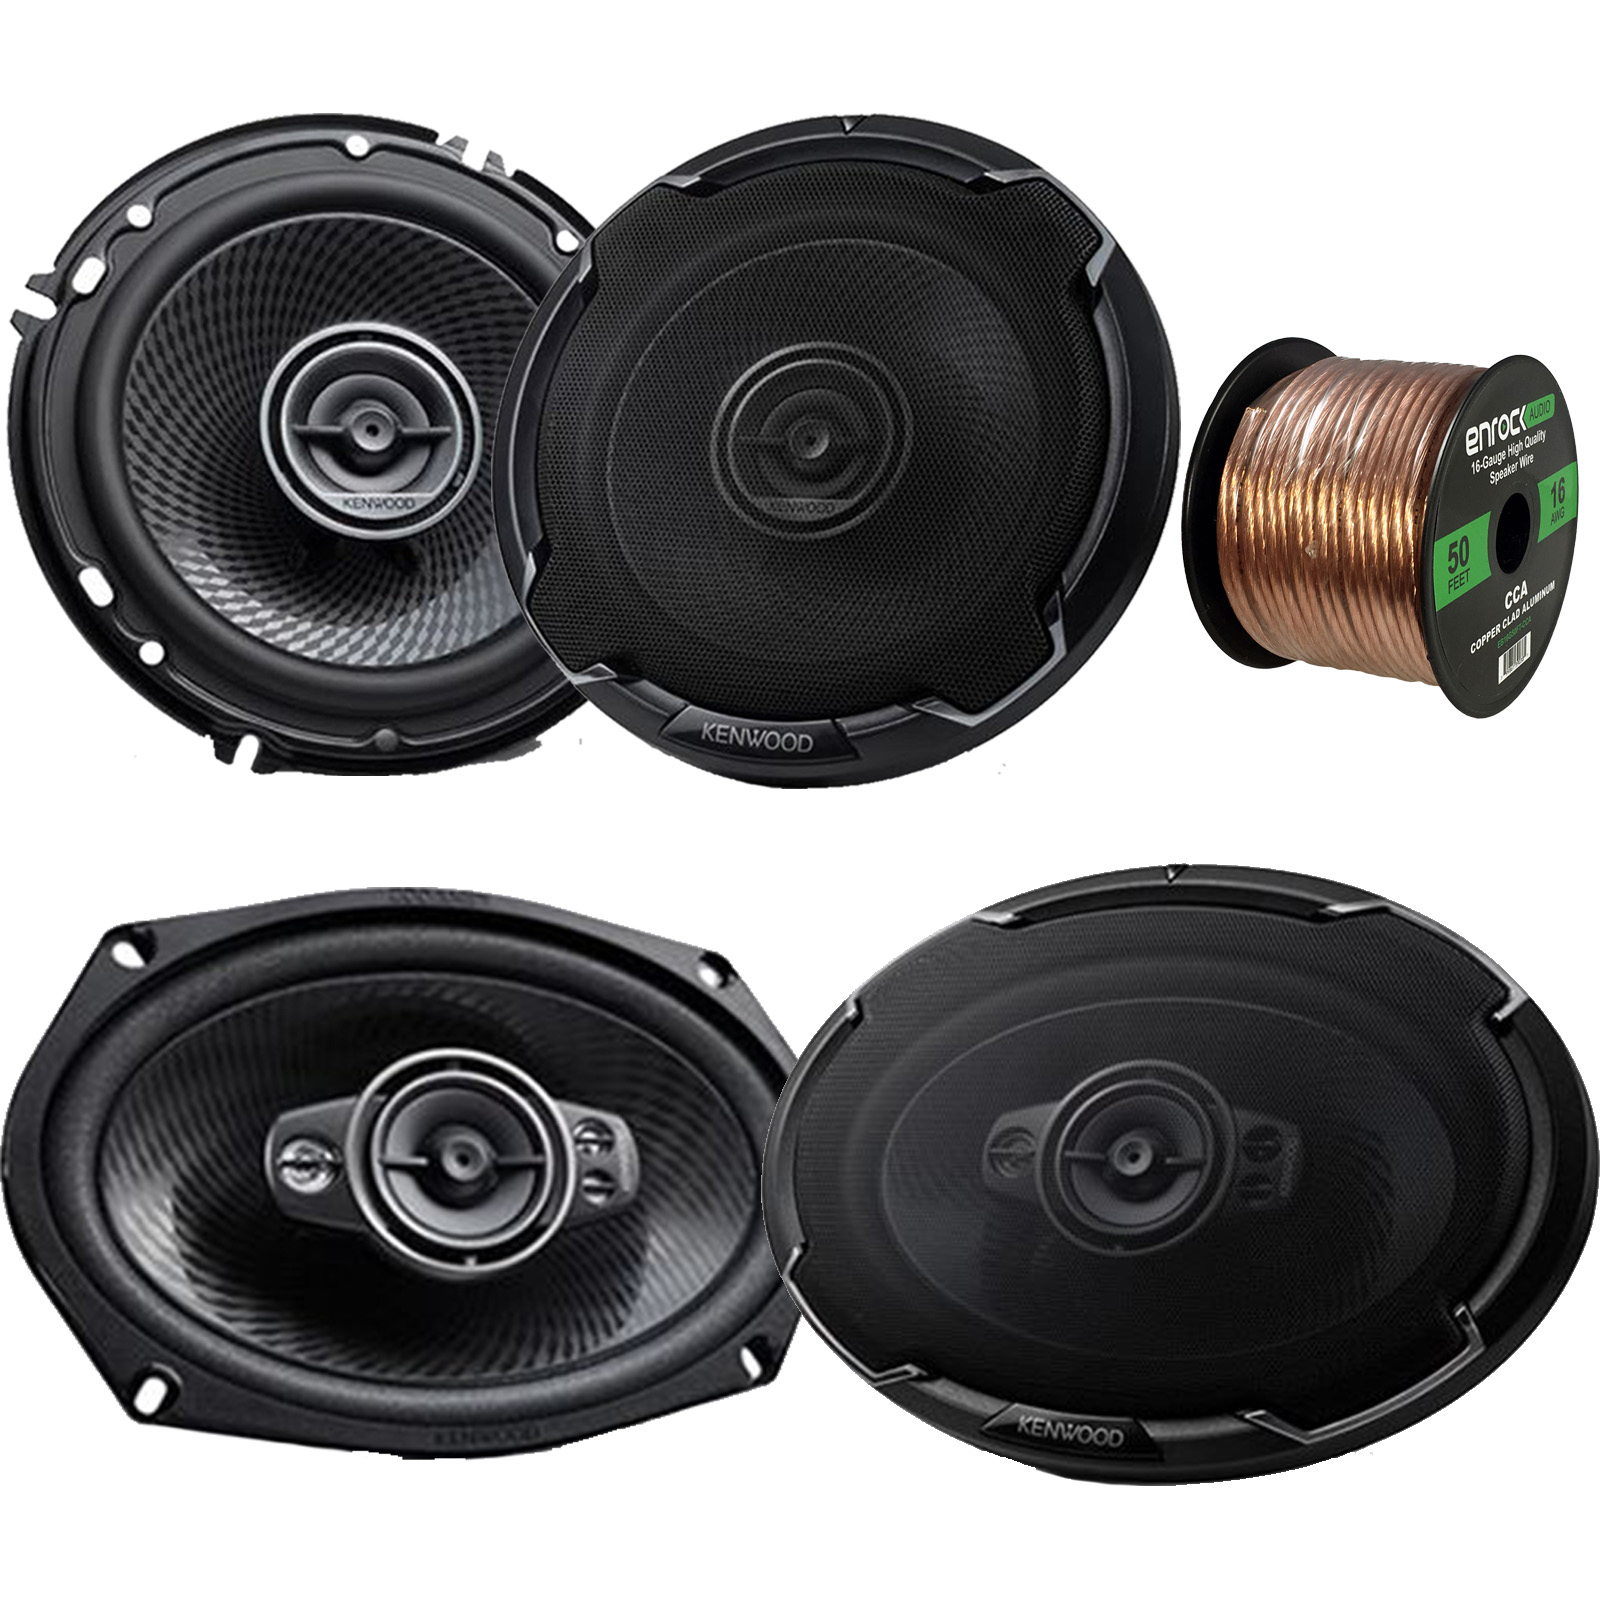 p audio speaker 650 watt price